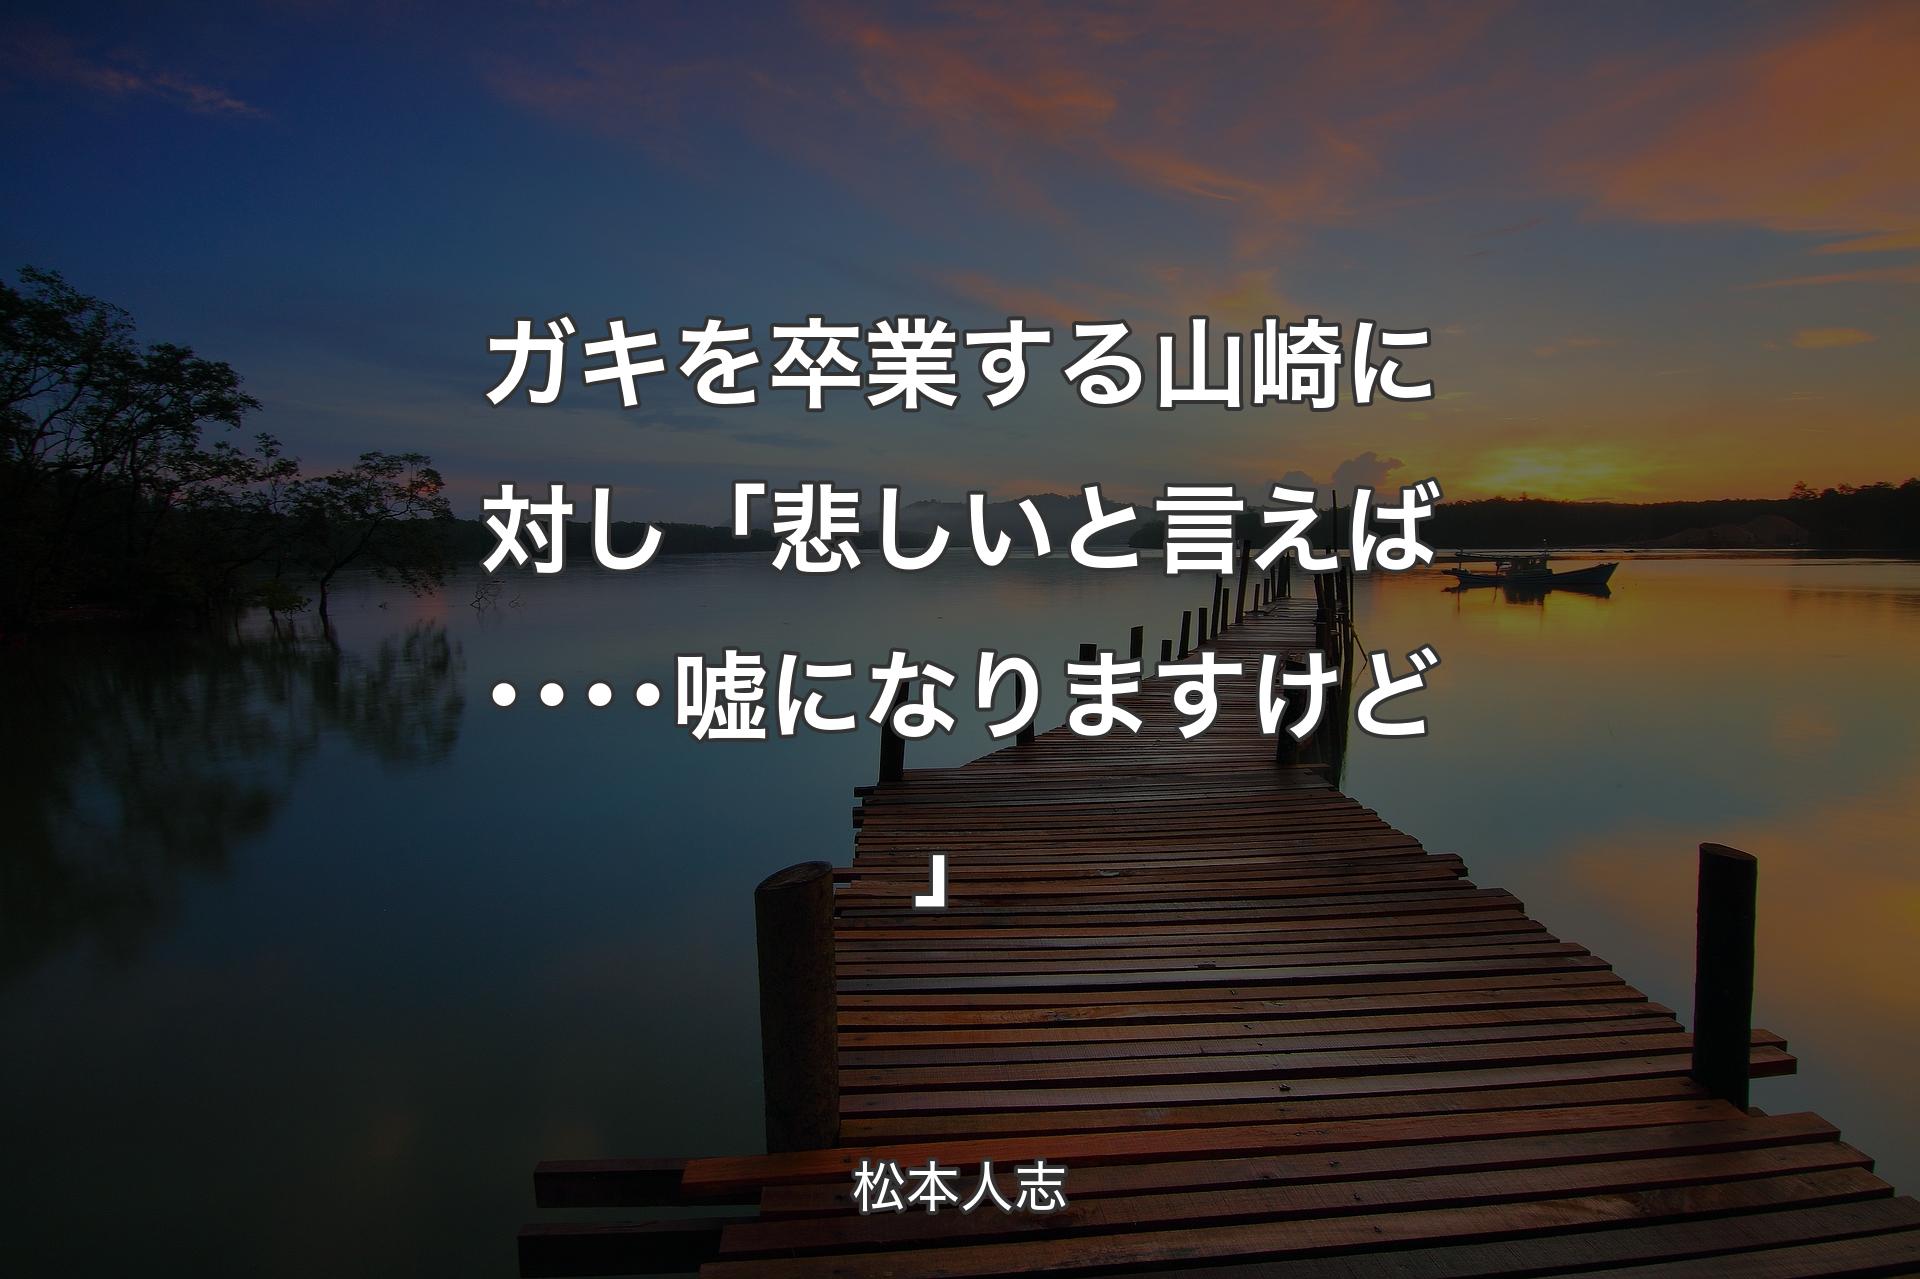 【背景3】ガキを卒業する山崎に対し 「悲しいと言えば････嘘になりますけど」 - 松本人志